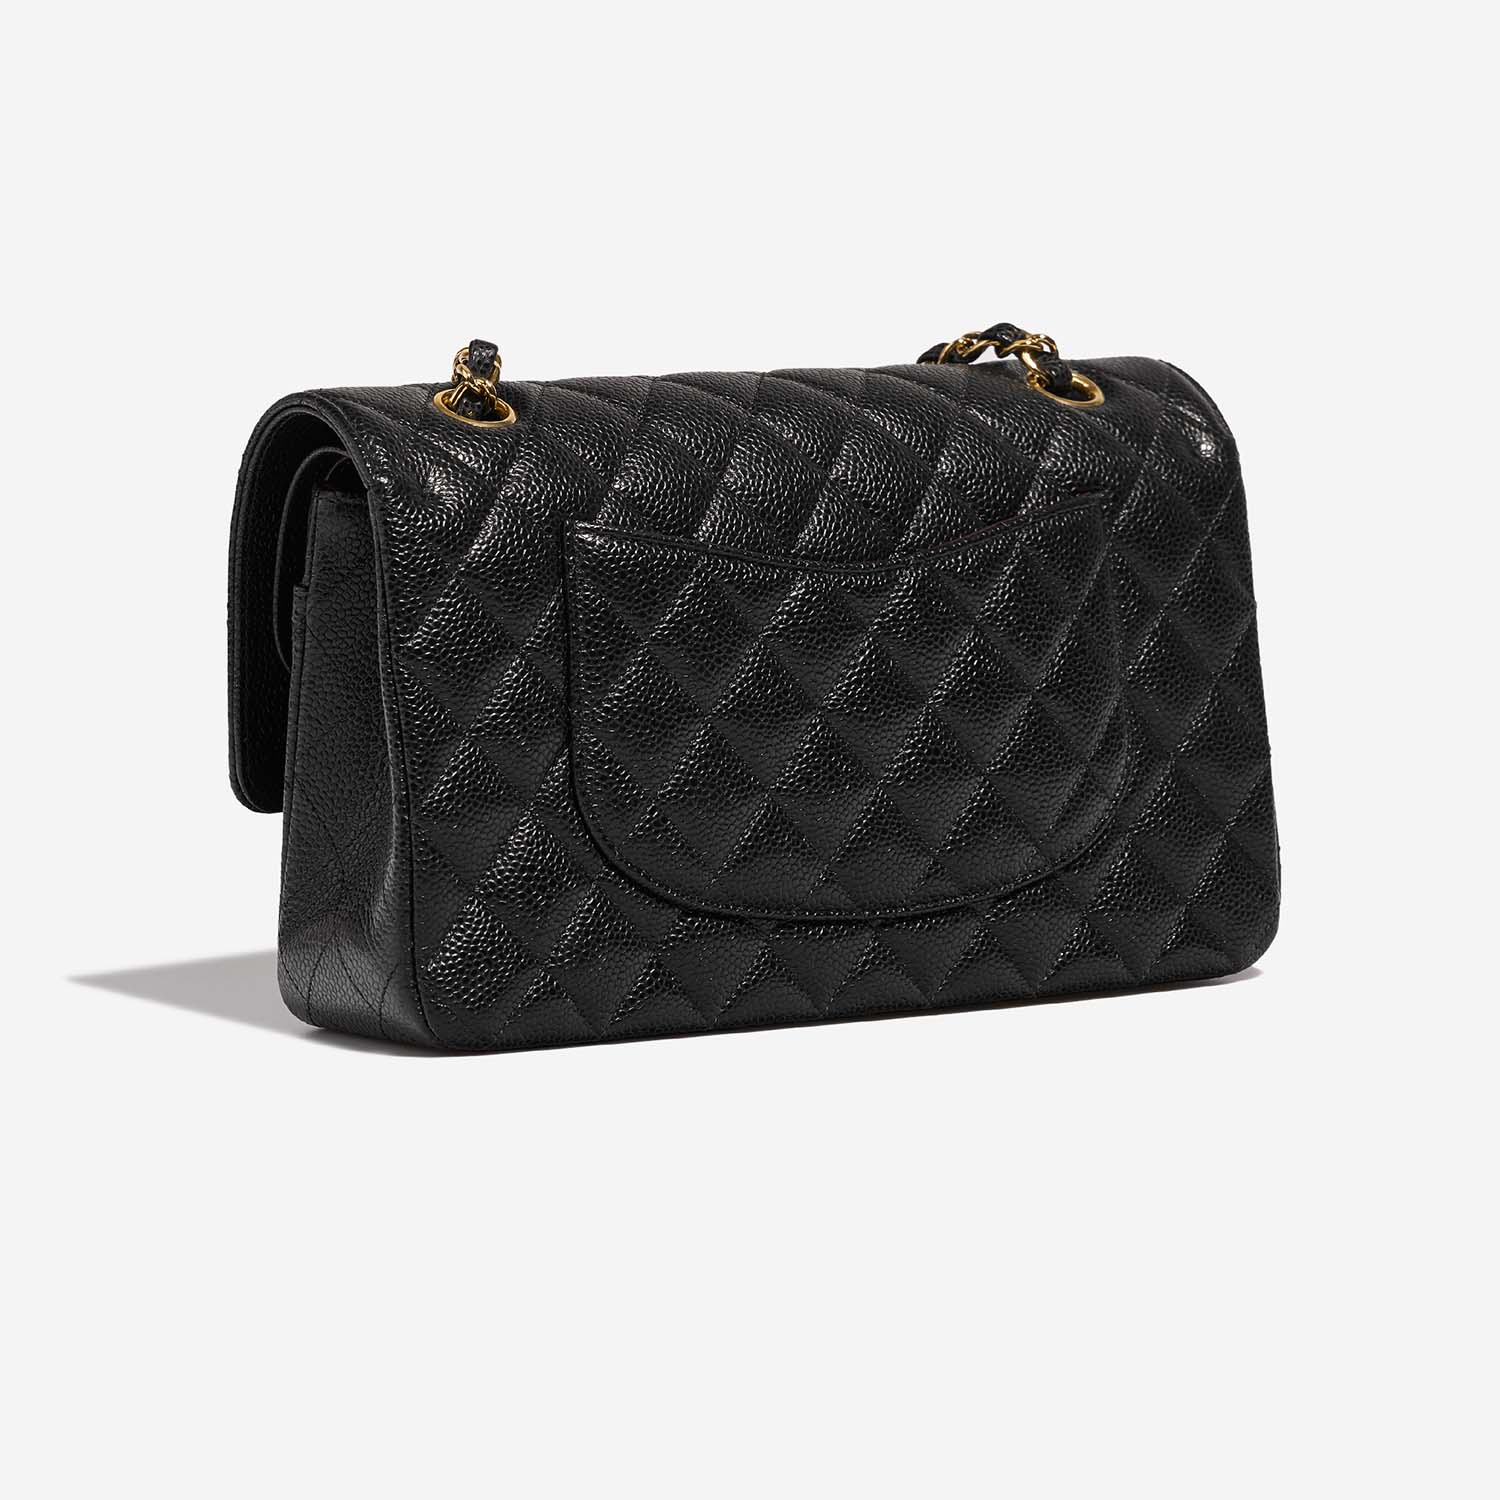 Chanel Timeless Medium Black Side Back | Verkaufen Sie Ihre Designer-Tasche auf Saclab.com